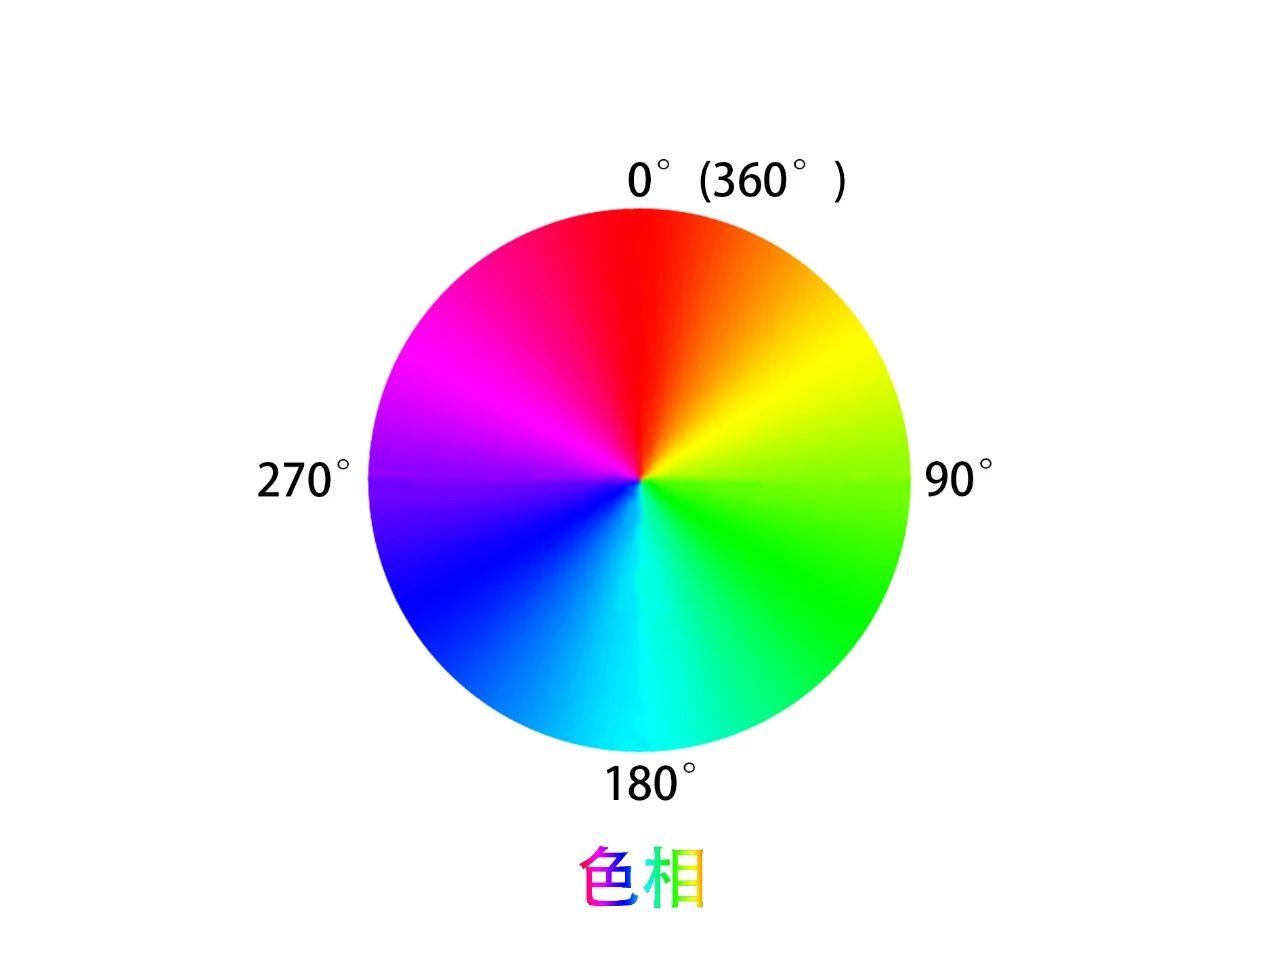 色彩原理解析：三原色、色彩三要素与色彩模型 - 知乎